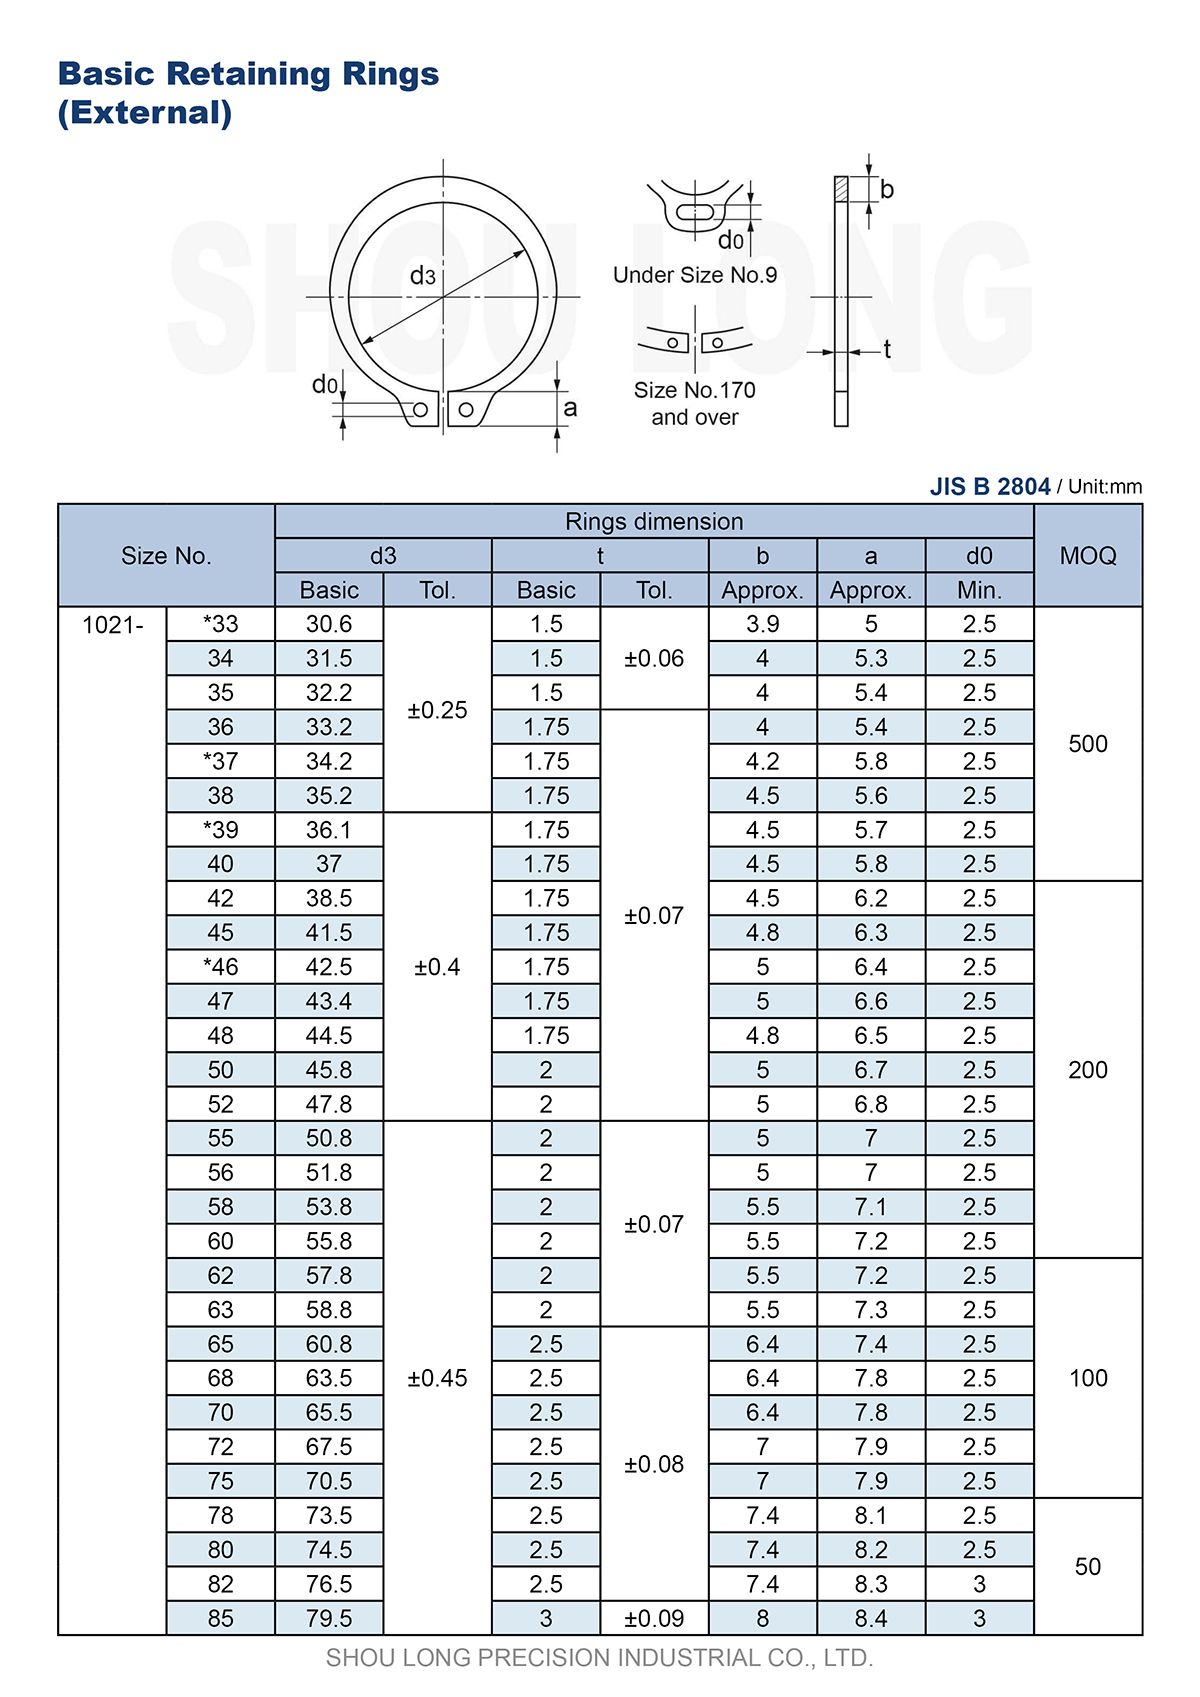 مواصفات حلقات الاحتفاظ الأساسية بالمقاسات المترية للعمود B2804-2 بمواصفات JIS